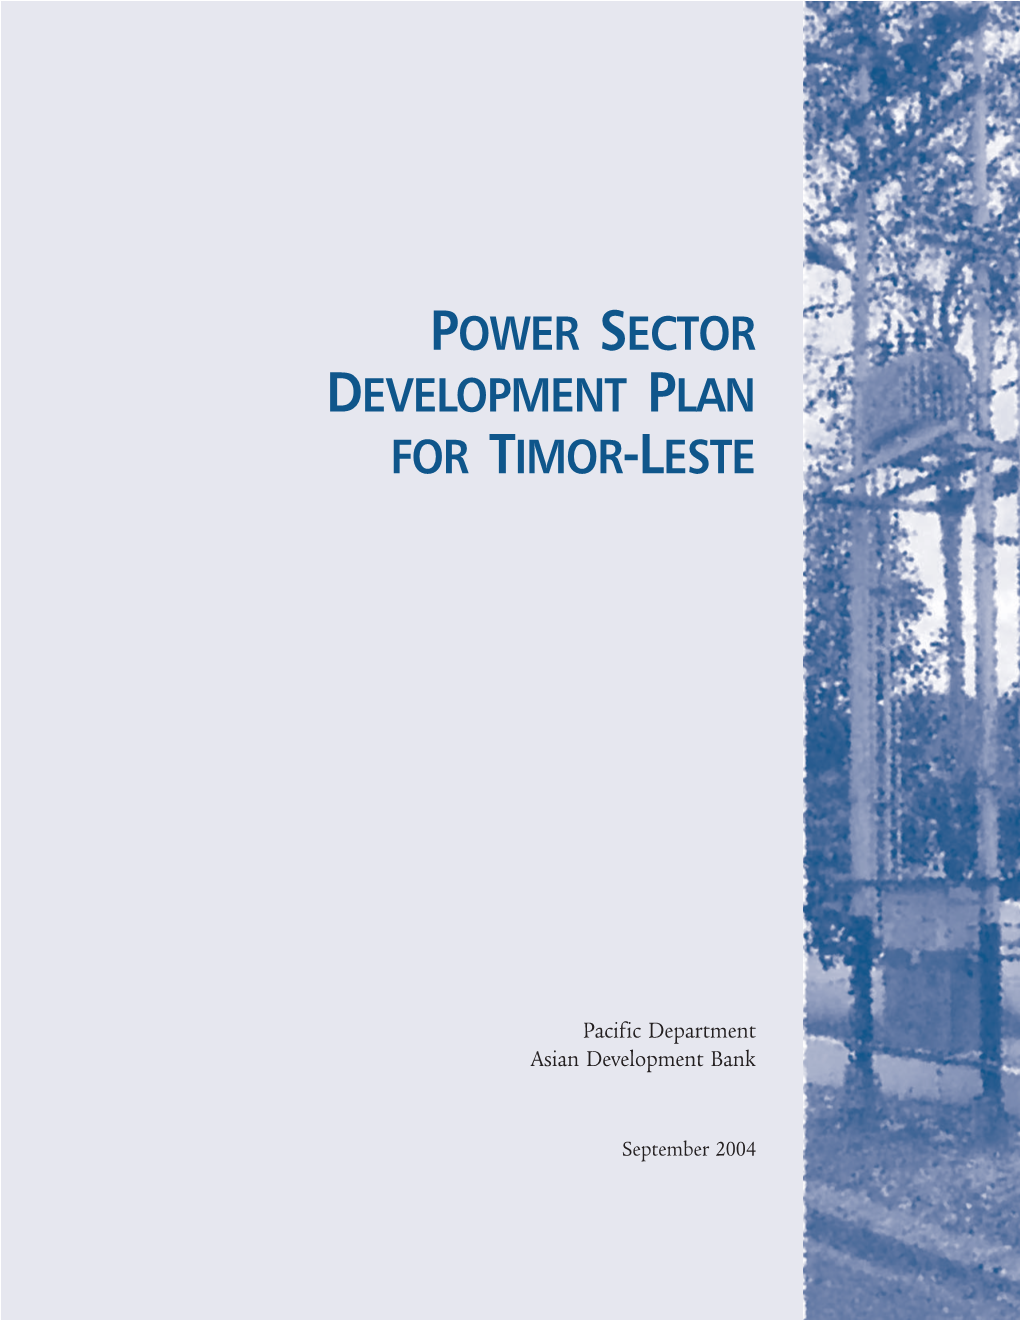 Power Sector Development Plan for Timor-Leste